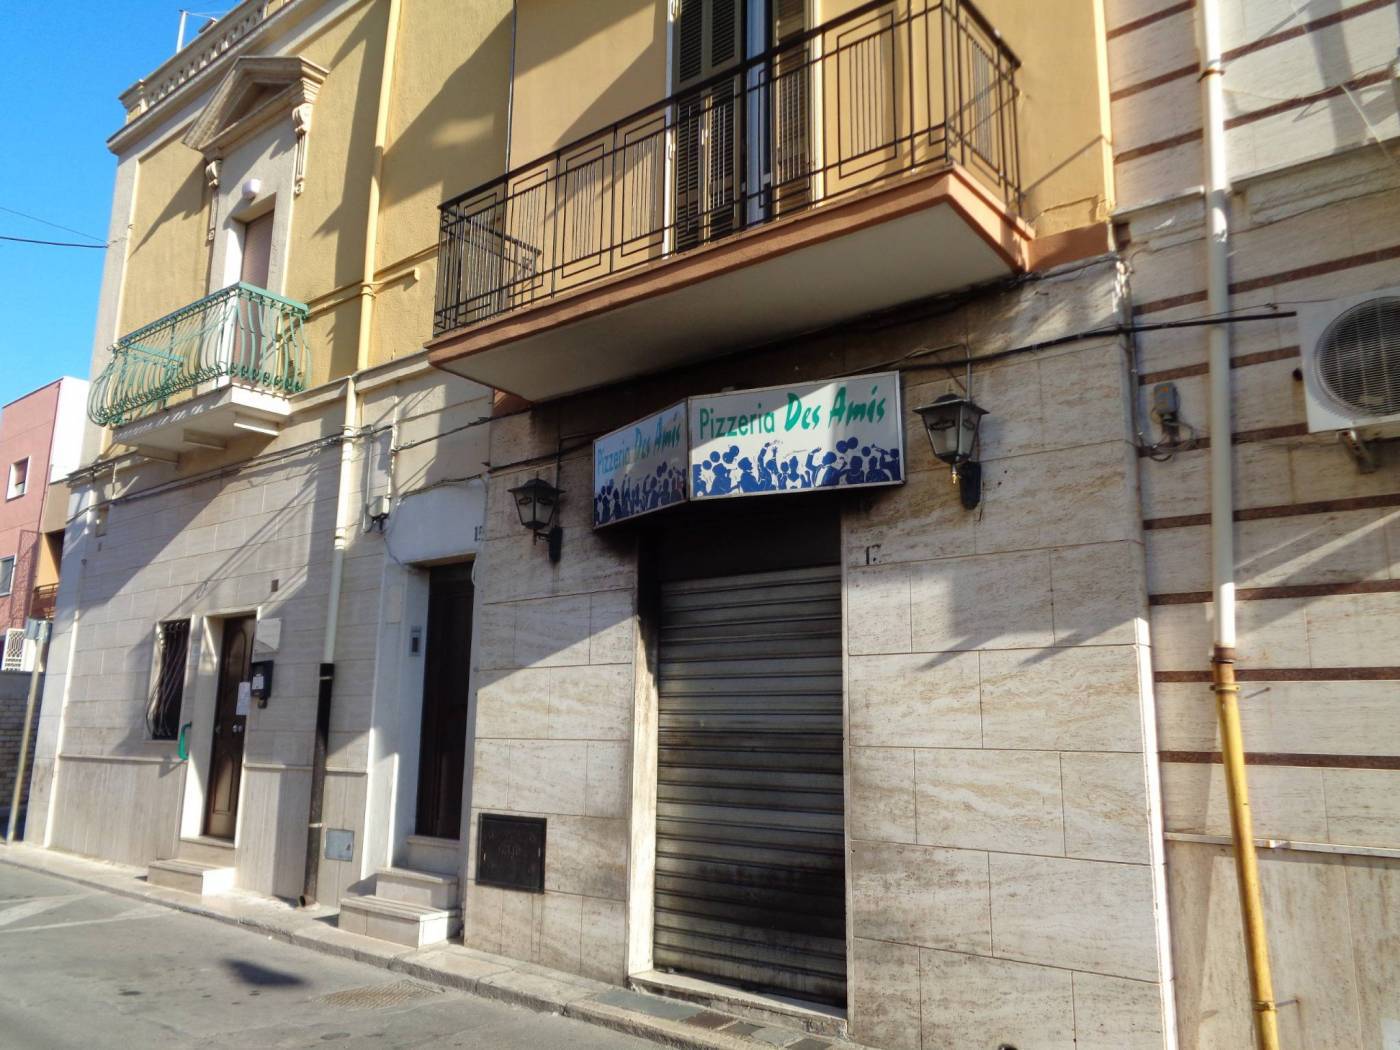 Immobile Commerciale in vendita a Valenzano, 2 locali, prezzo € 59.000 | CambioCasa.it